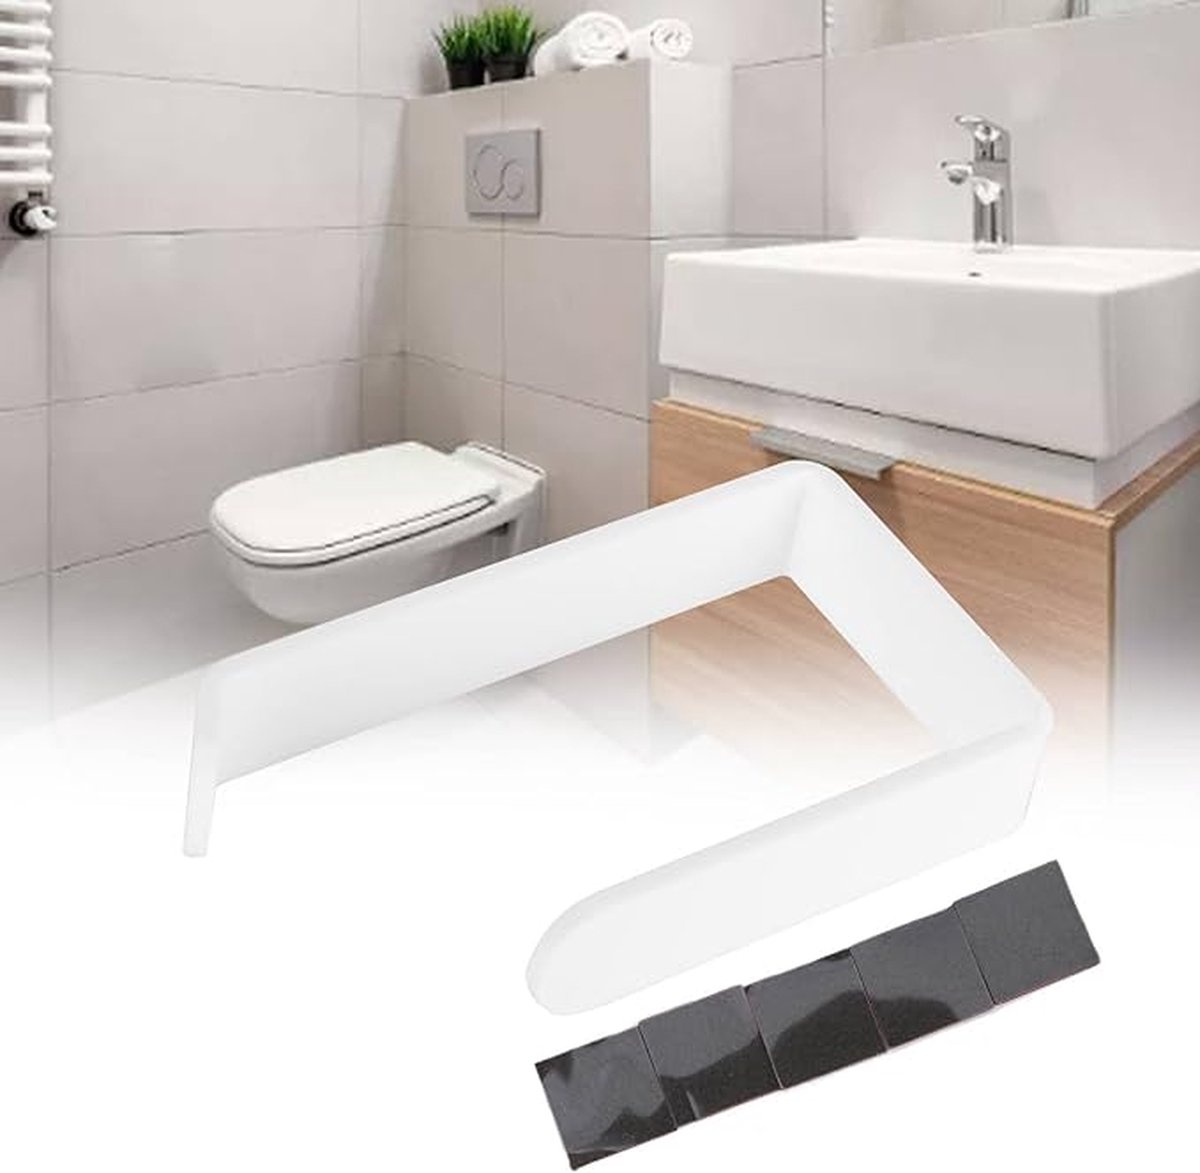 Narimano® Handdoekhouder zonder boren, handdoekhouder zelfklevend - handdoekhouder badkamer - voor badkamer toilet -Zelfklevende toiletrolhouder standaard -Wit